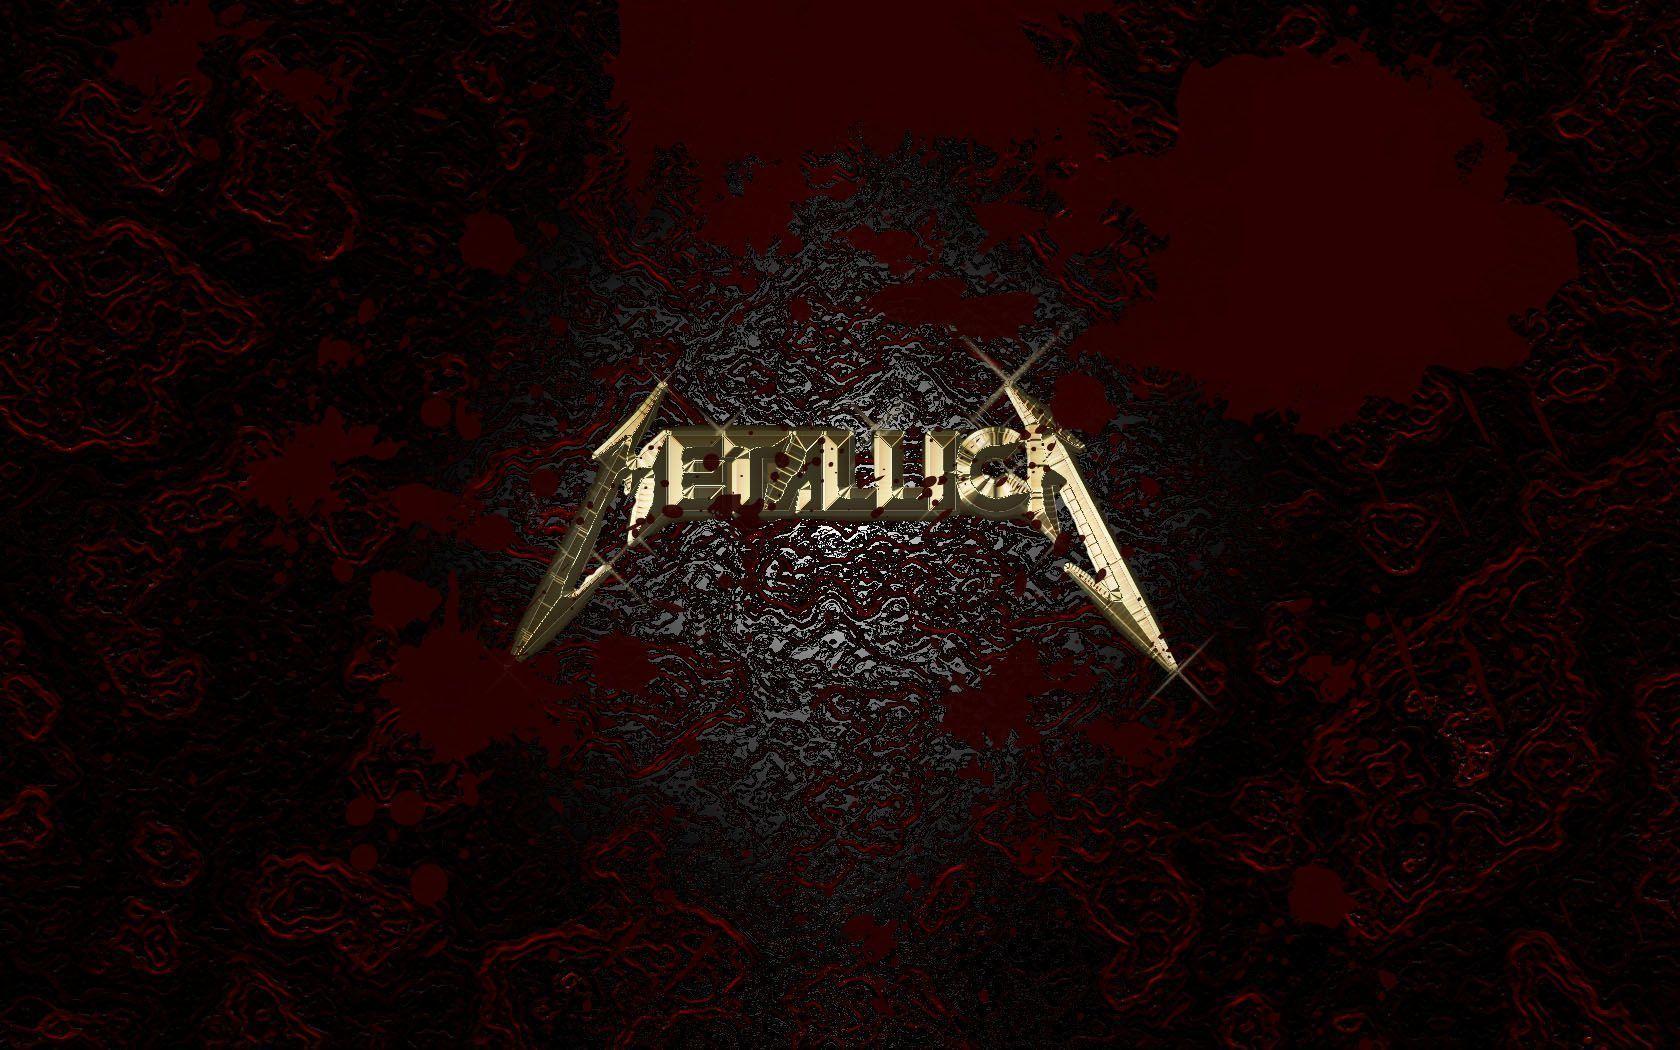 Metallica Logo Wallpaper/Image,Metallica Pictures/Desktop